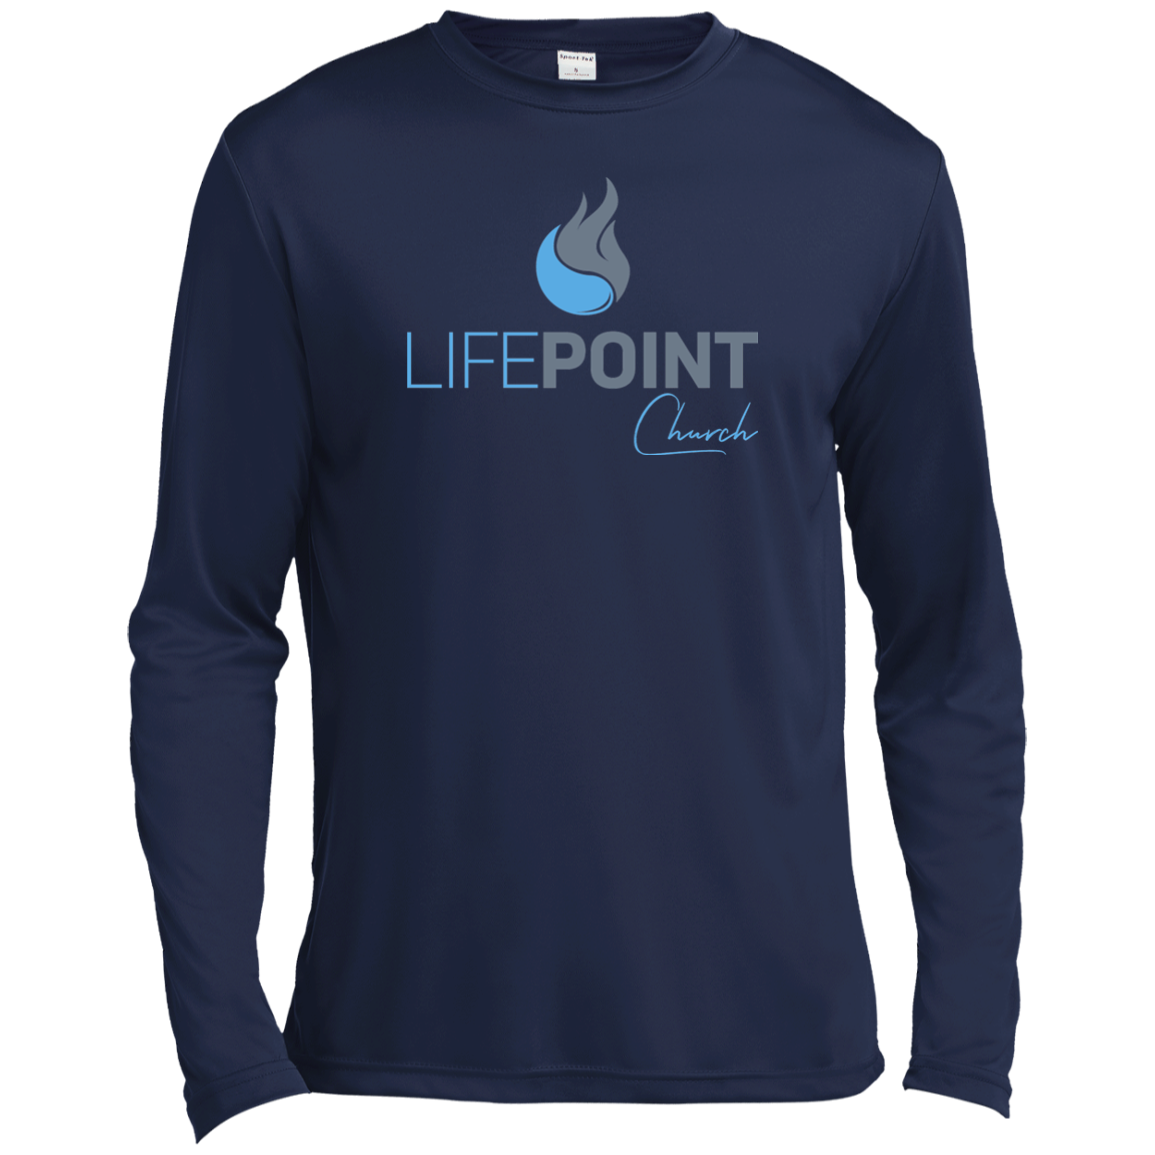 Life Point Moisture Absorbing T-Shirt